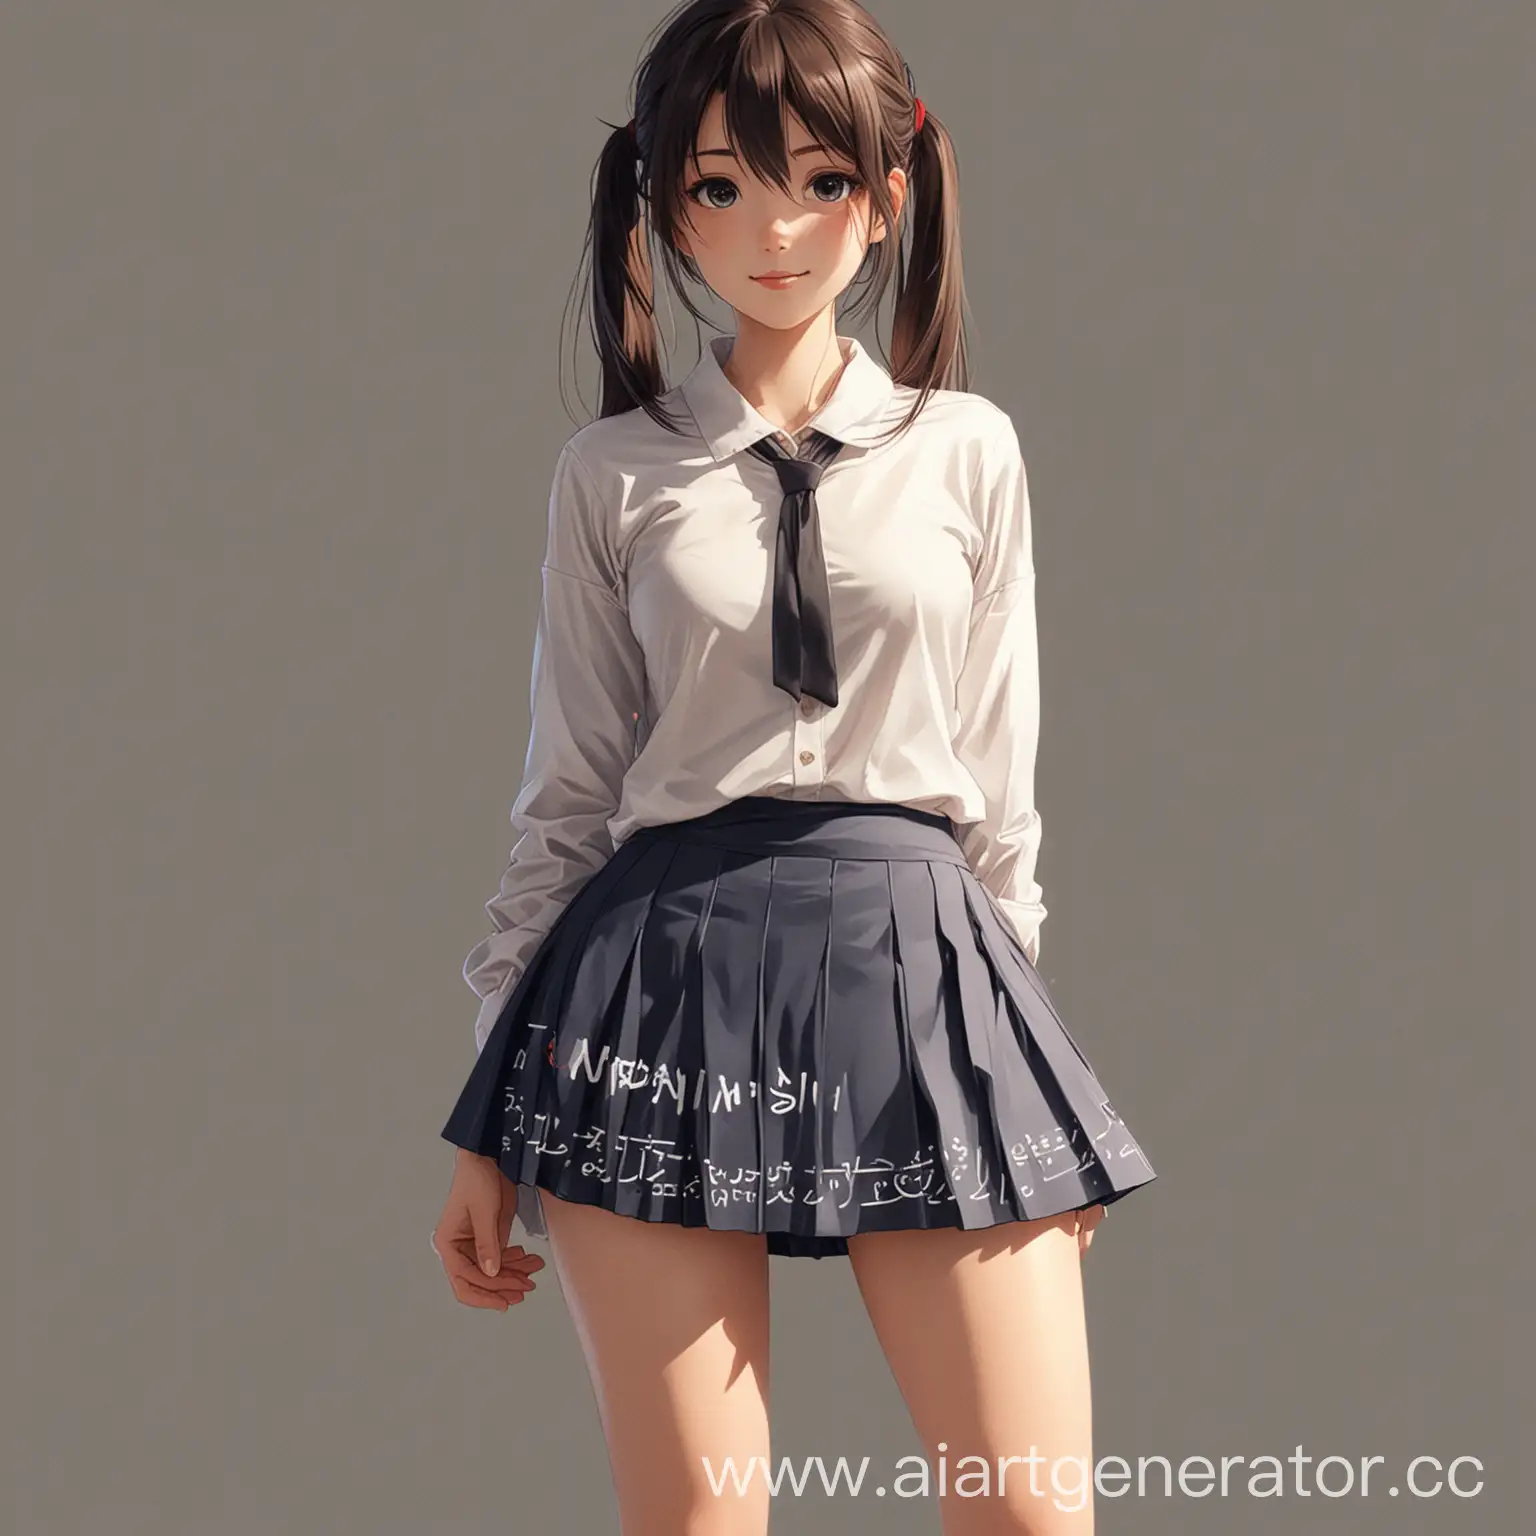 Anime-Girl-in-Skirt-Writing-MONZi